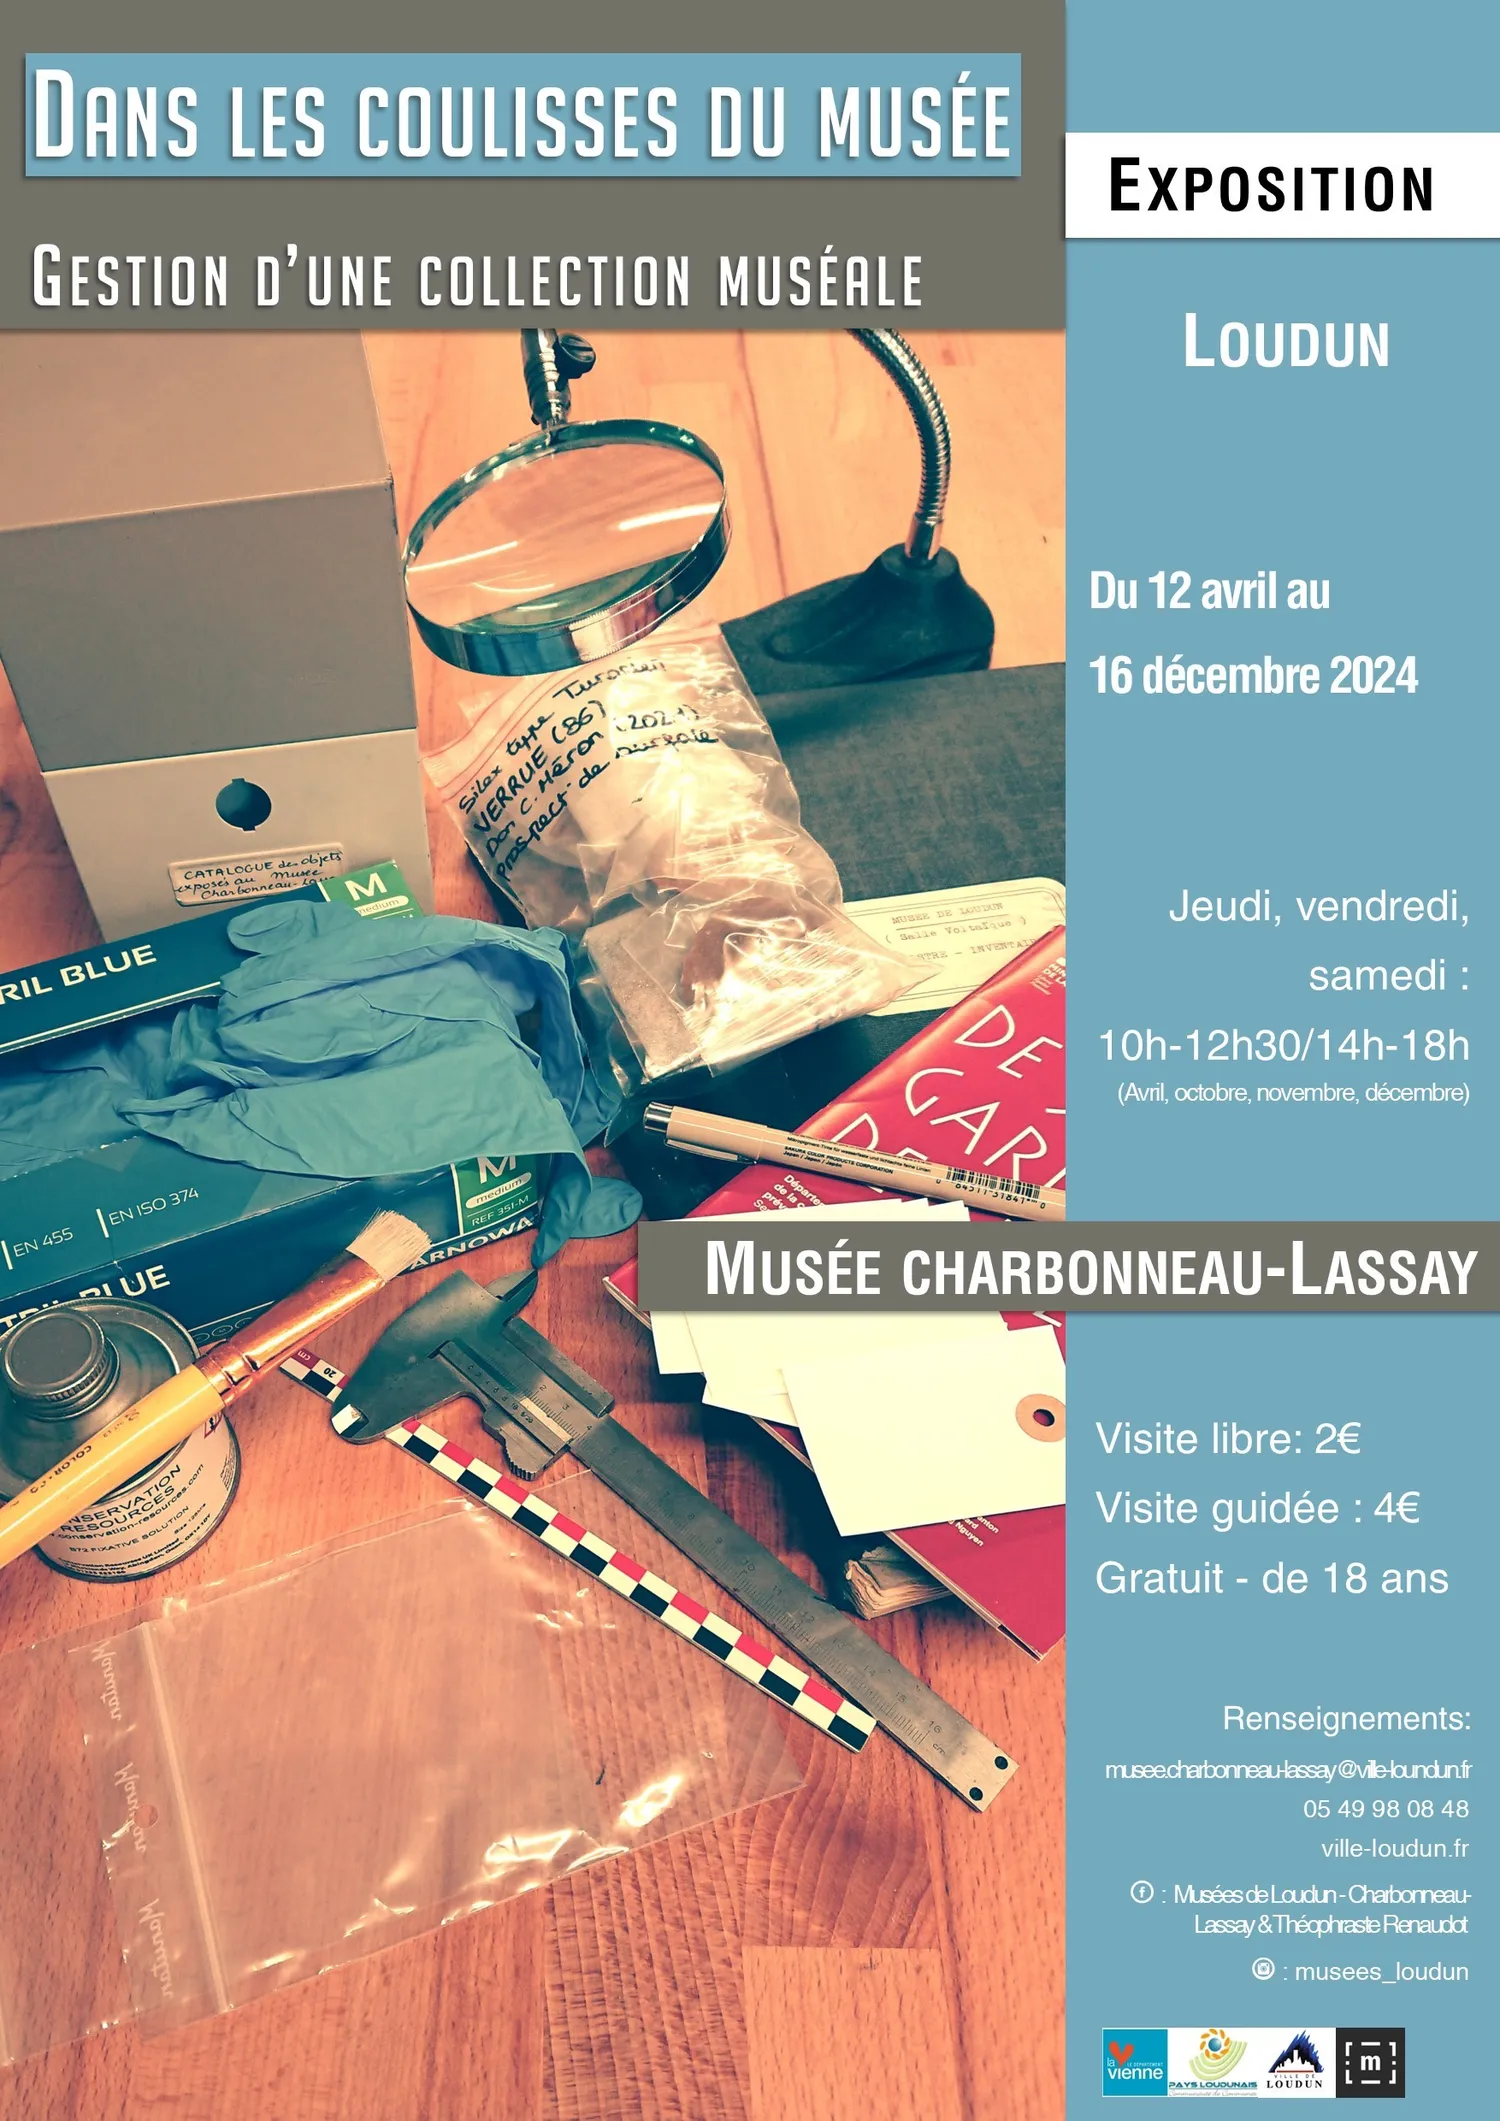 Image qui illustre: Exposition "dans les coulisses du musée" Charbonneau-Lassay à Loudun - 1